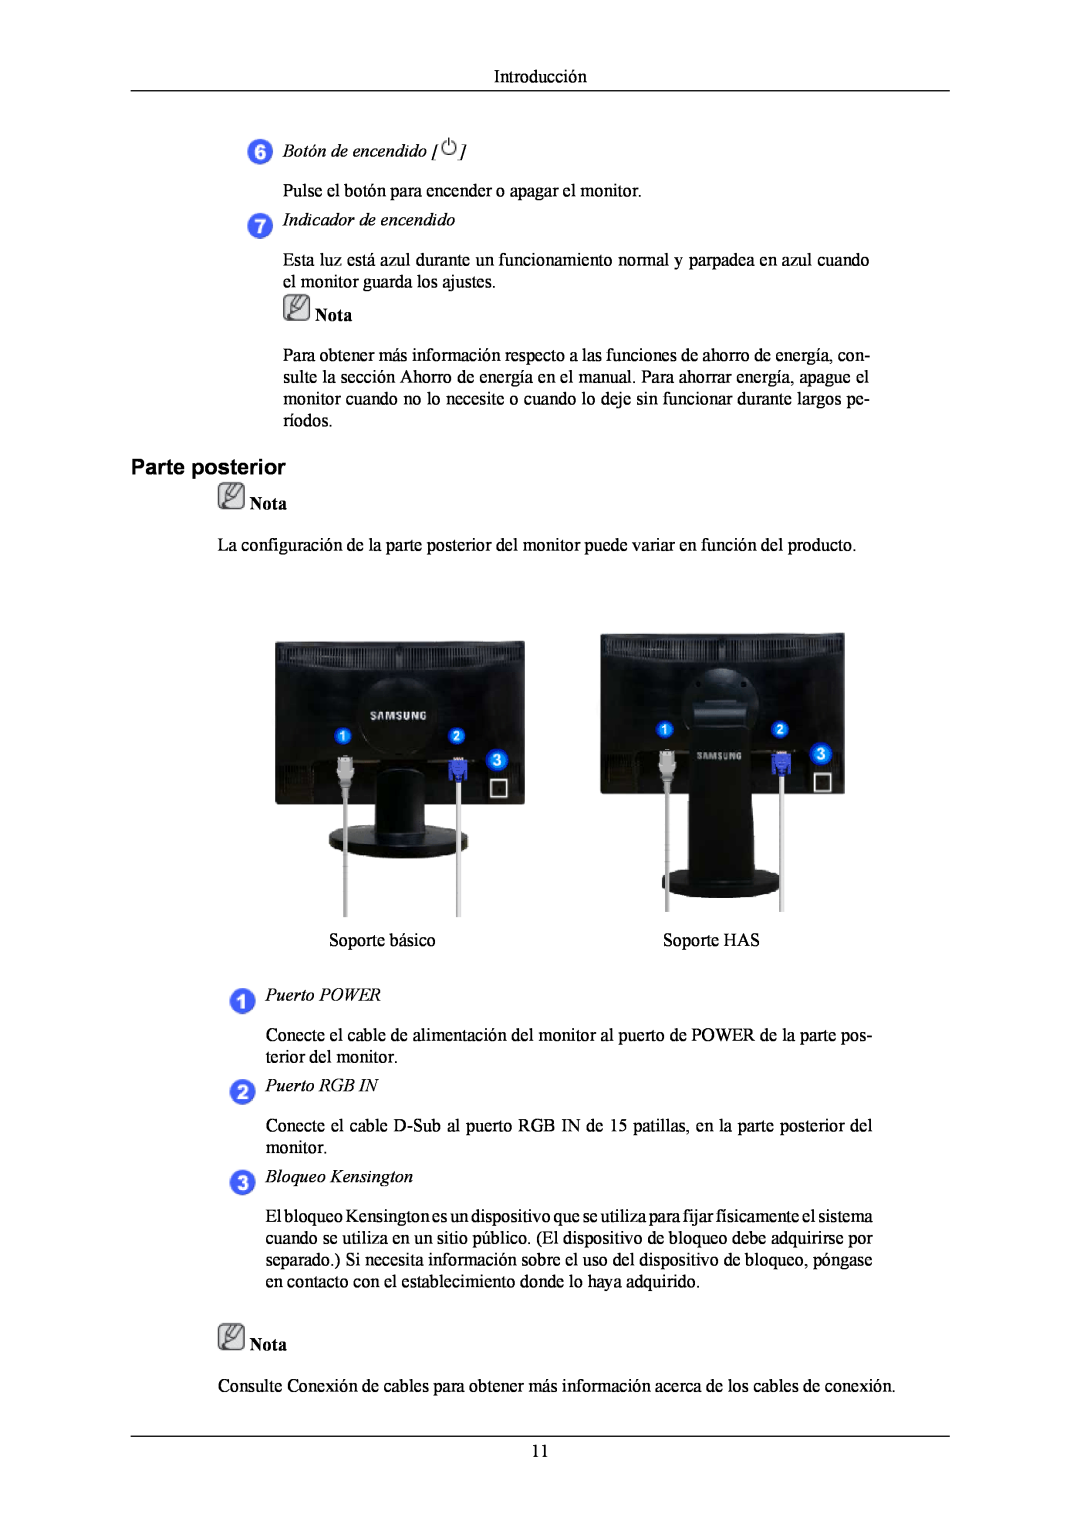 Samsung LS20MYNKF/EDC manual Parte posterior, Botón de encendido, Indicador de encendido, Puerto POWER, Puerto RGB IN 